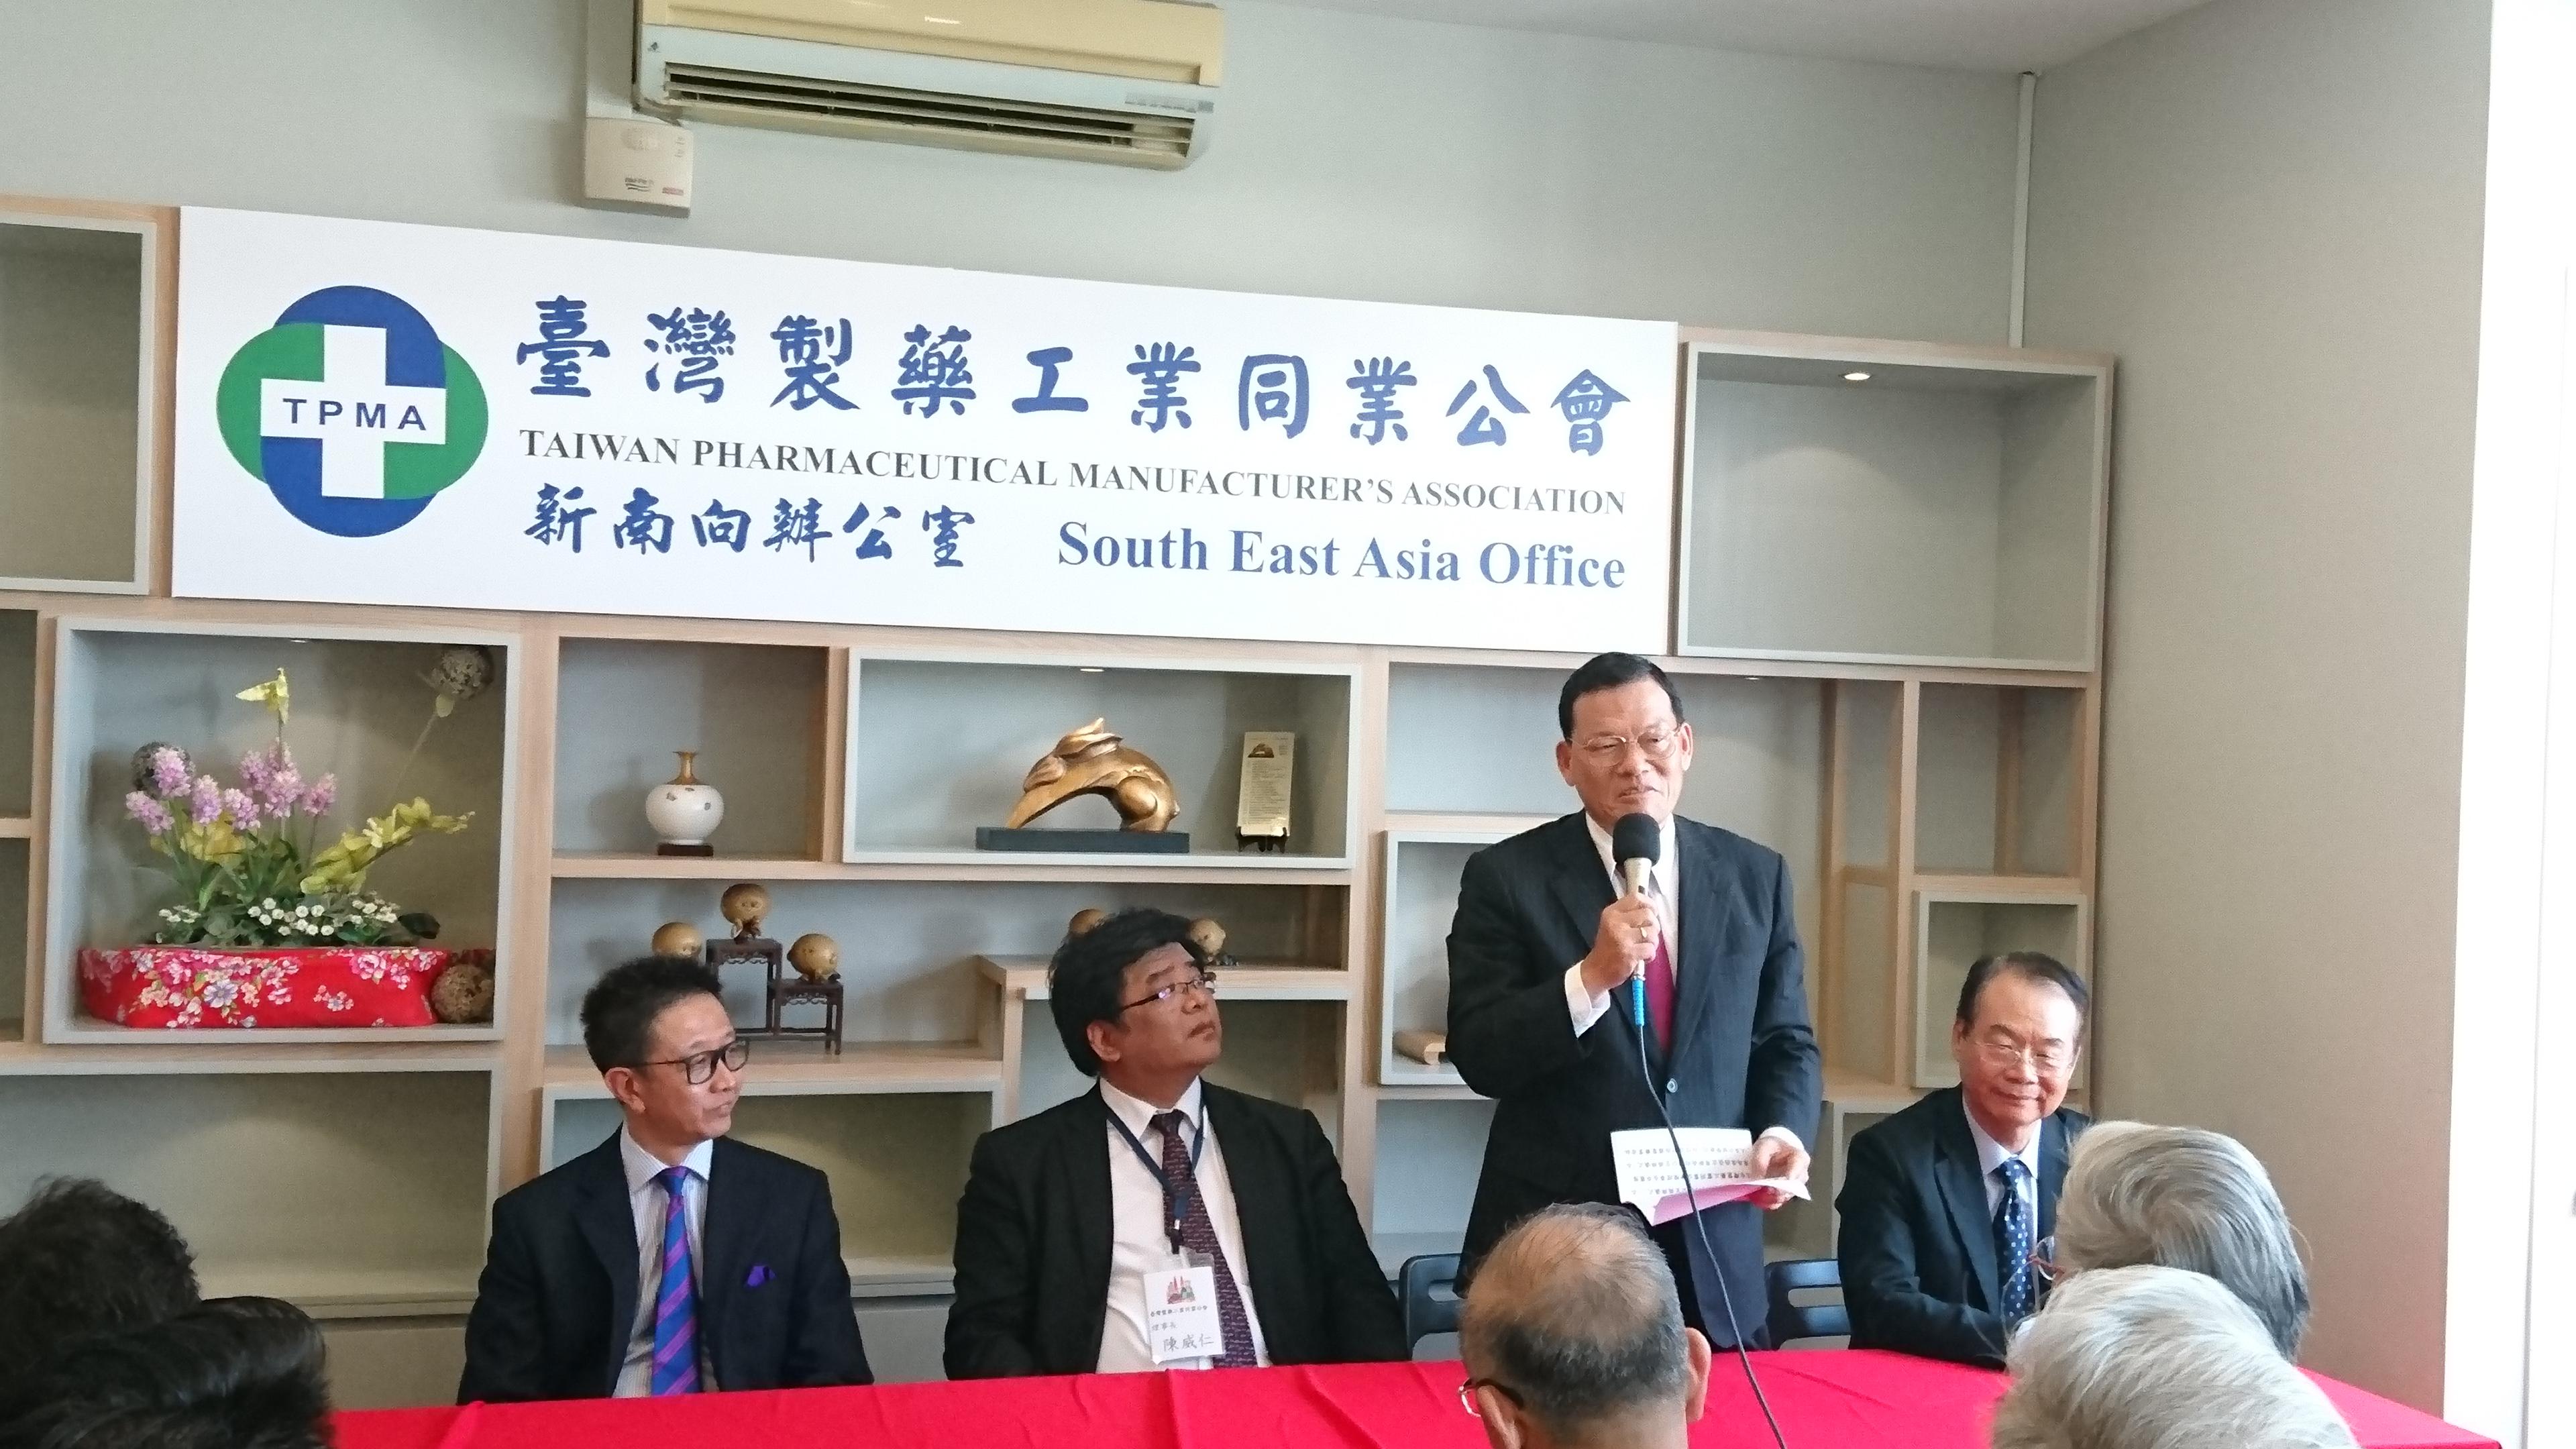 「台灣製藥工業同業公會新南向辦公室揭牌儀式」與會代表聆聽章大使致詞。
